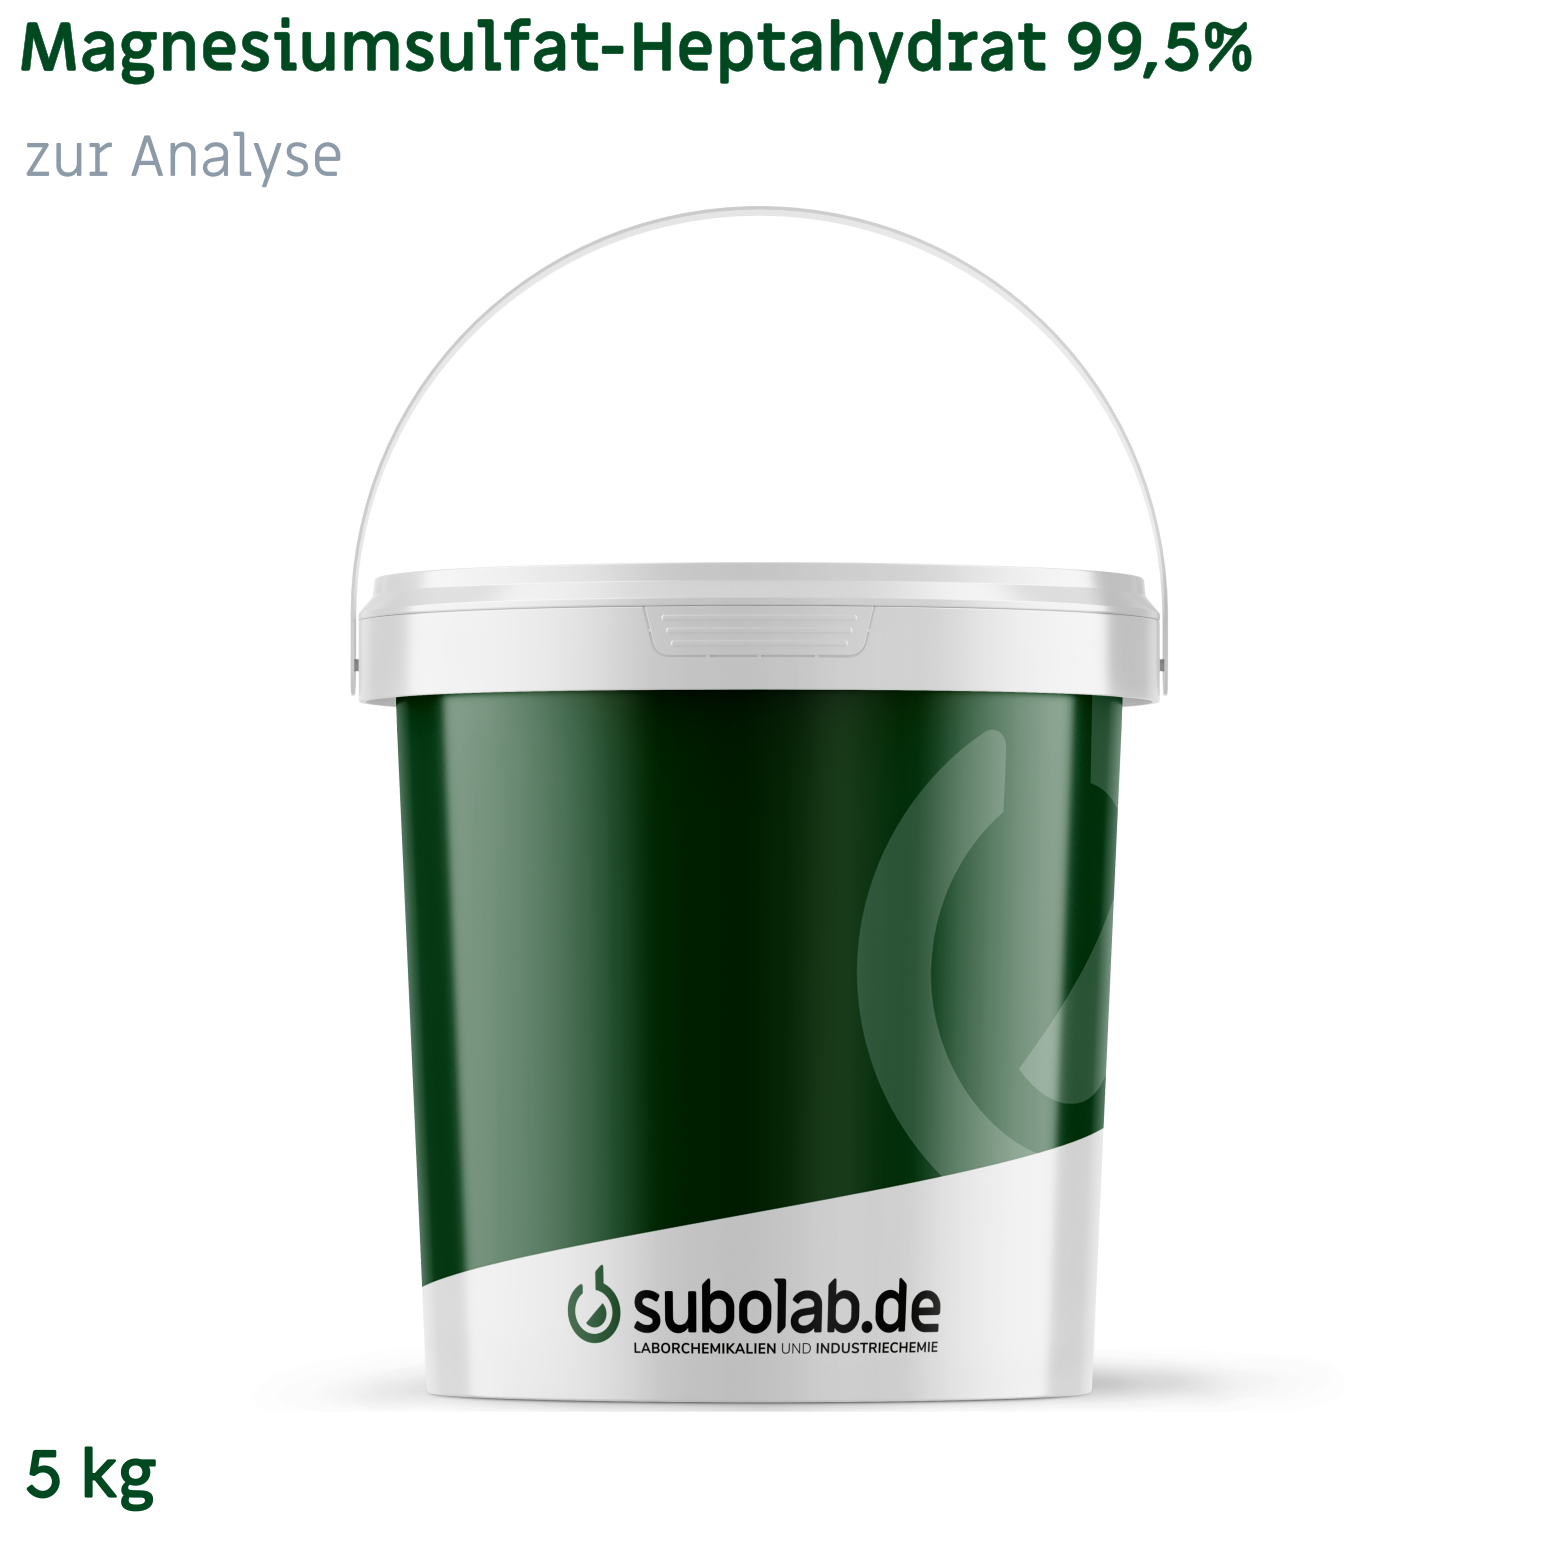 Bild von Magnesiumsulfat - Heptahydrat 99,5% zur Analyse (5 kg)